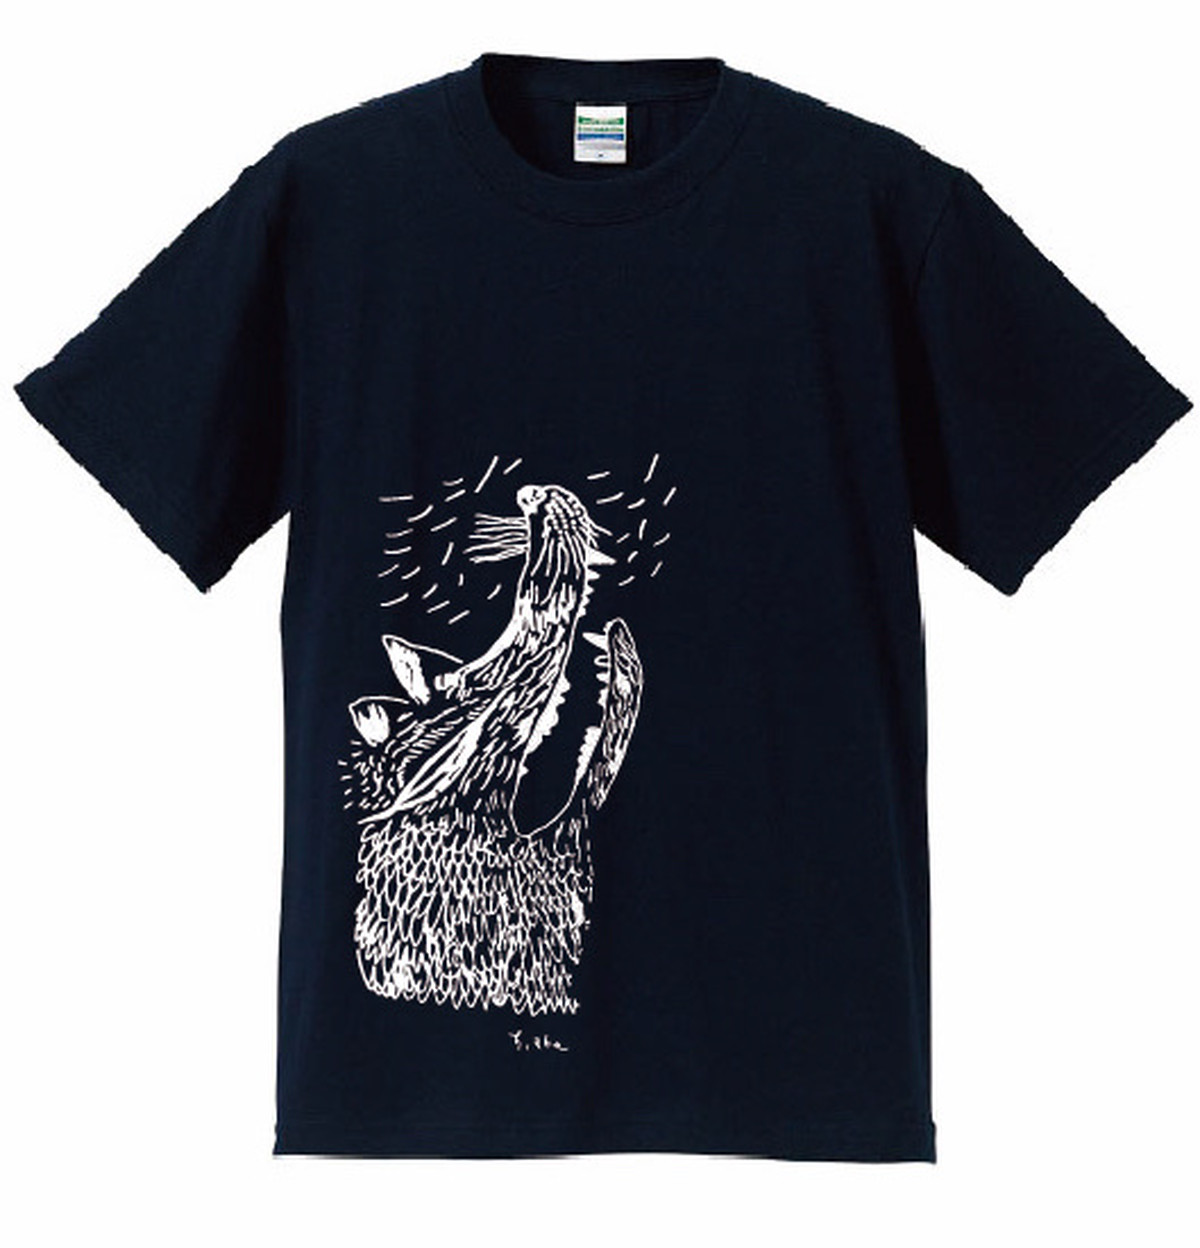 2014年製アート系】 LIQUID BLUE オオカミTシャツ サイズL+tevetamw.com